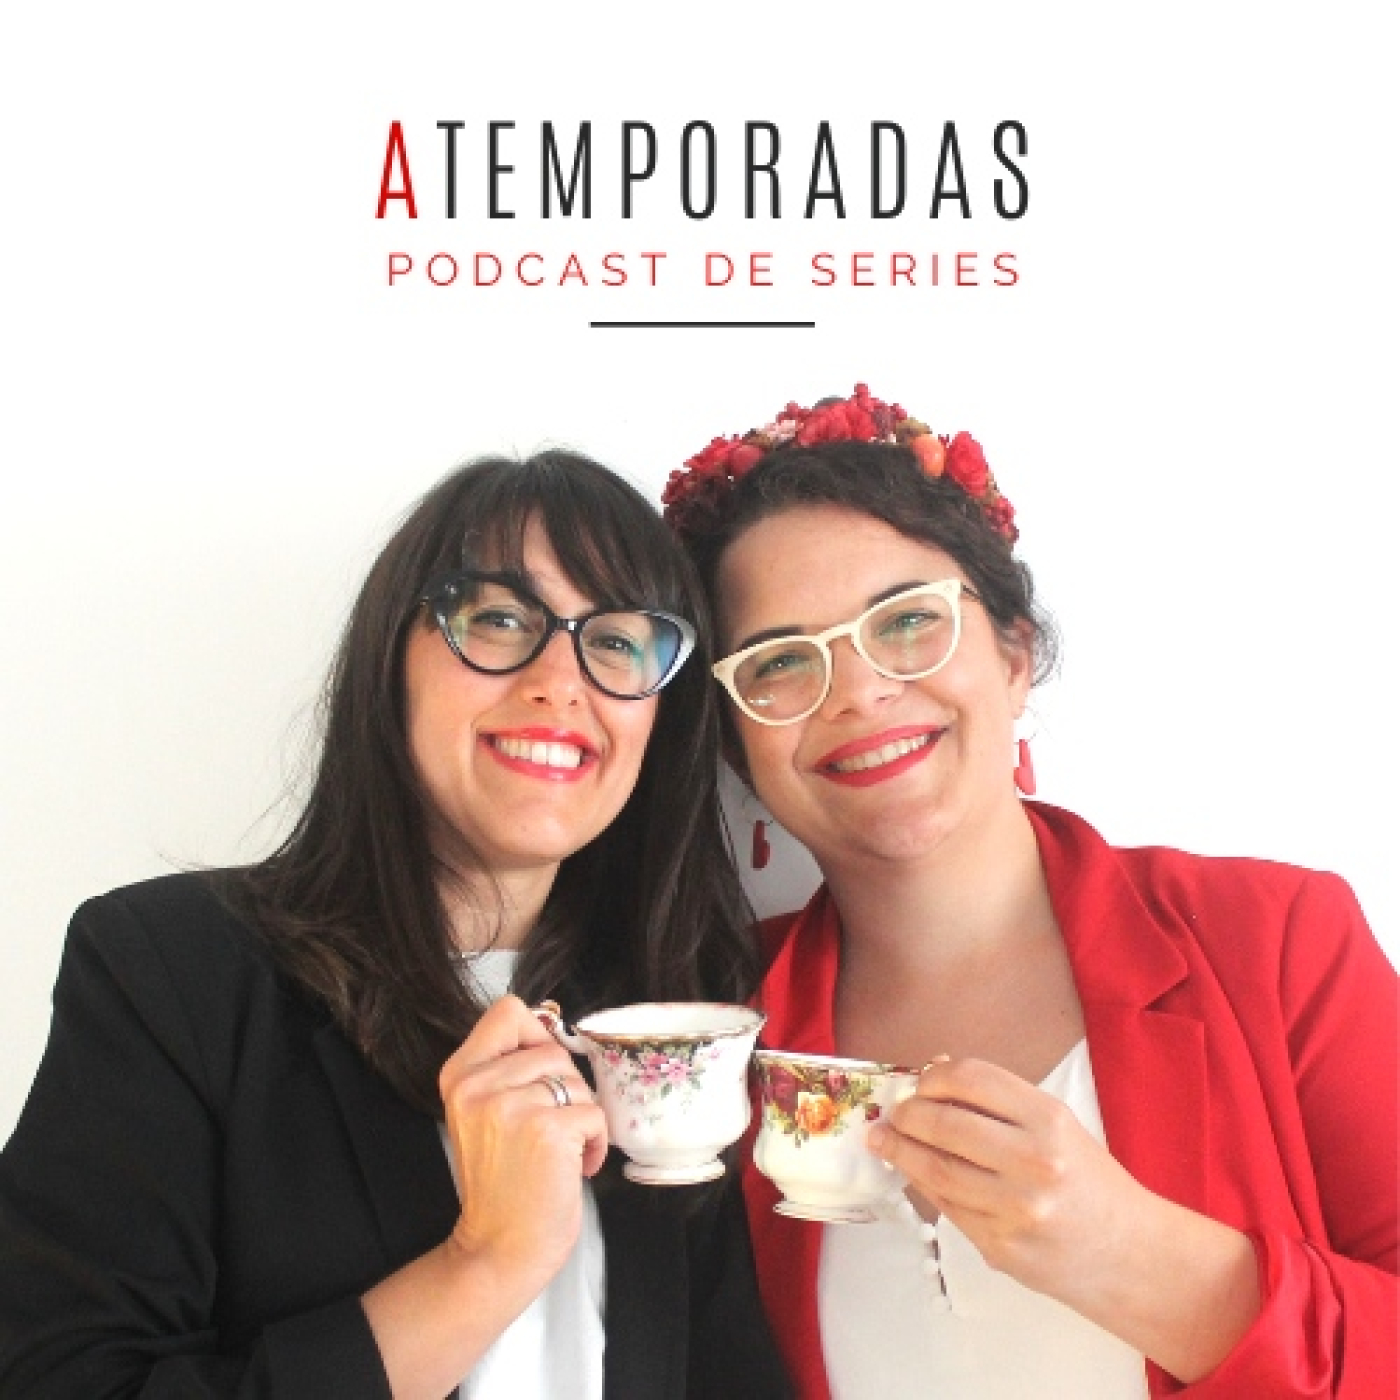 aTemporadas – Podcast de series